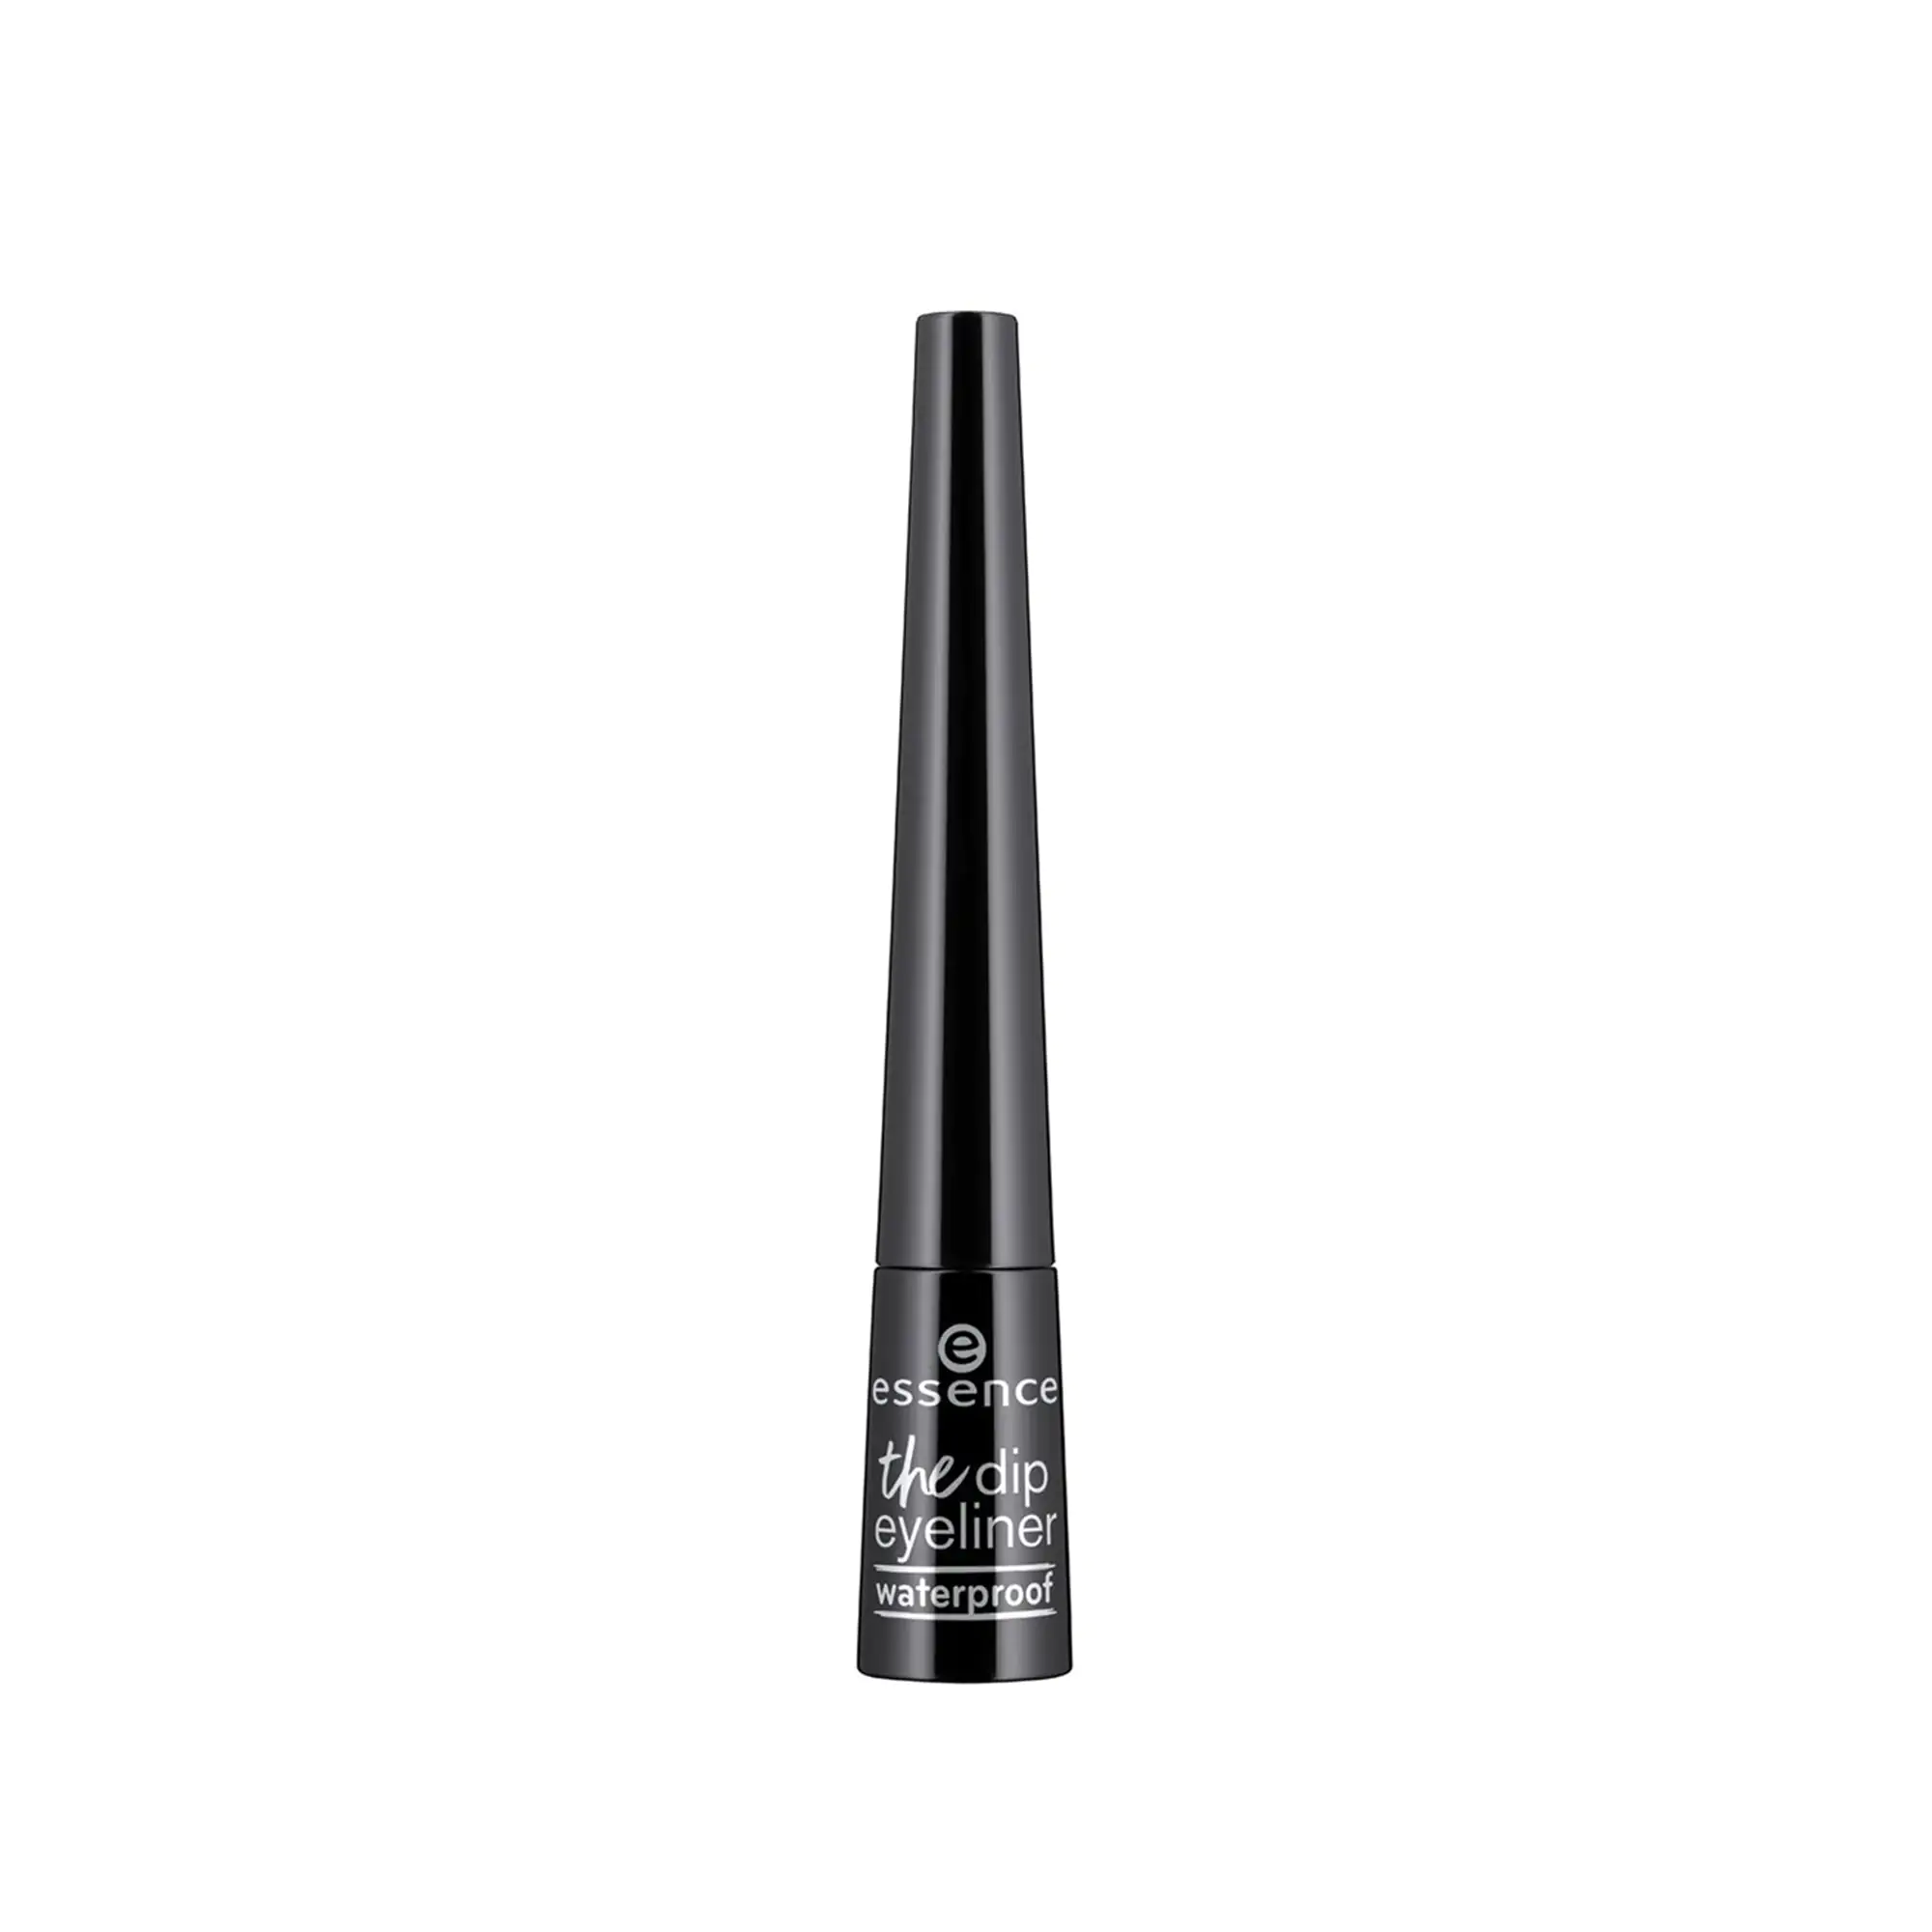 Essence Eyeliner The Dip Black 2,5ml - Femme Fatale - Essence Eyeliner The Dip Black 2,5ml